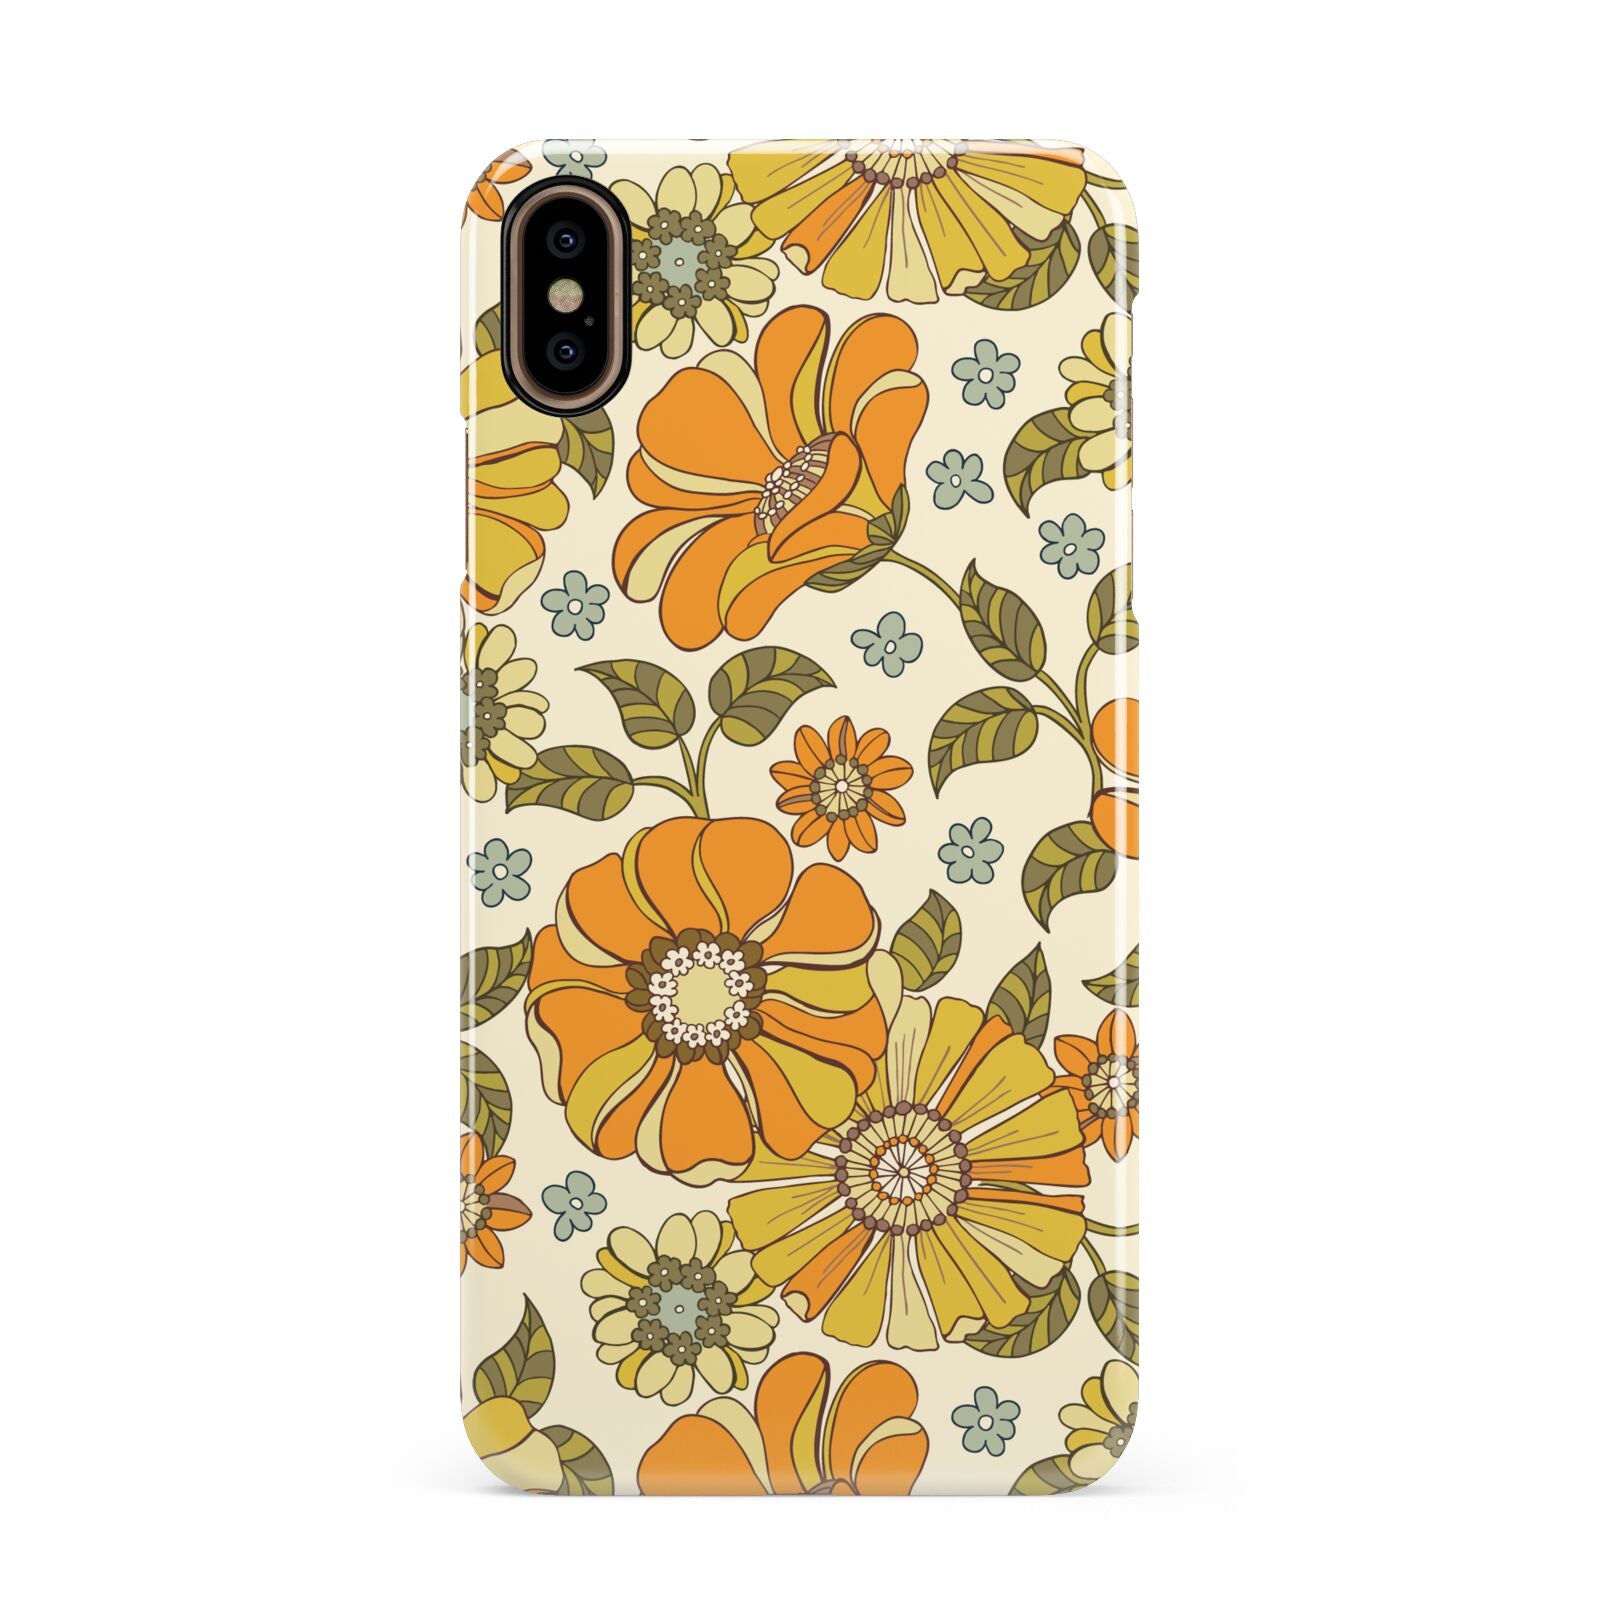 Vintage Floral Apple iPhone Xs Max 3D Snap Case